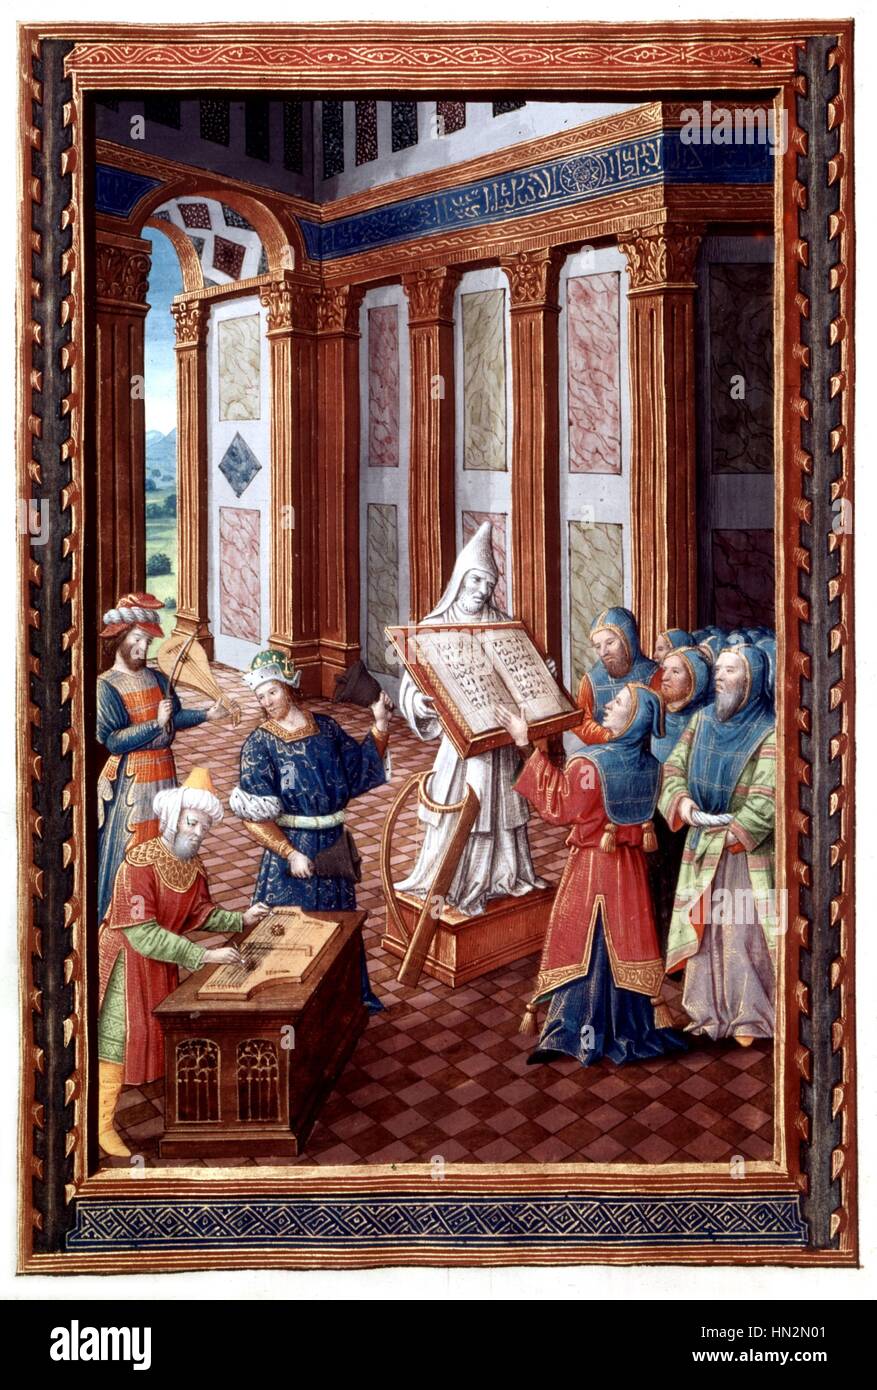 Rene II tagaktiv, Herzog von Lothringen (1451-1508). Ein Chor von Musikern im Tempel 15. Jahrhundert Frankreich Stockfoto